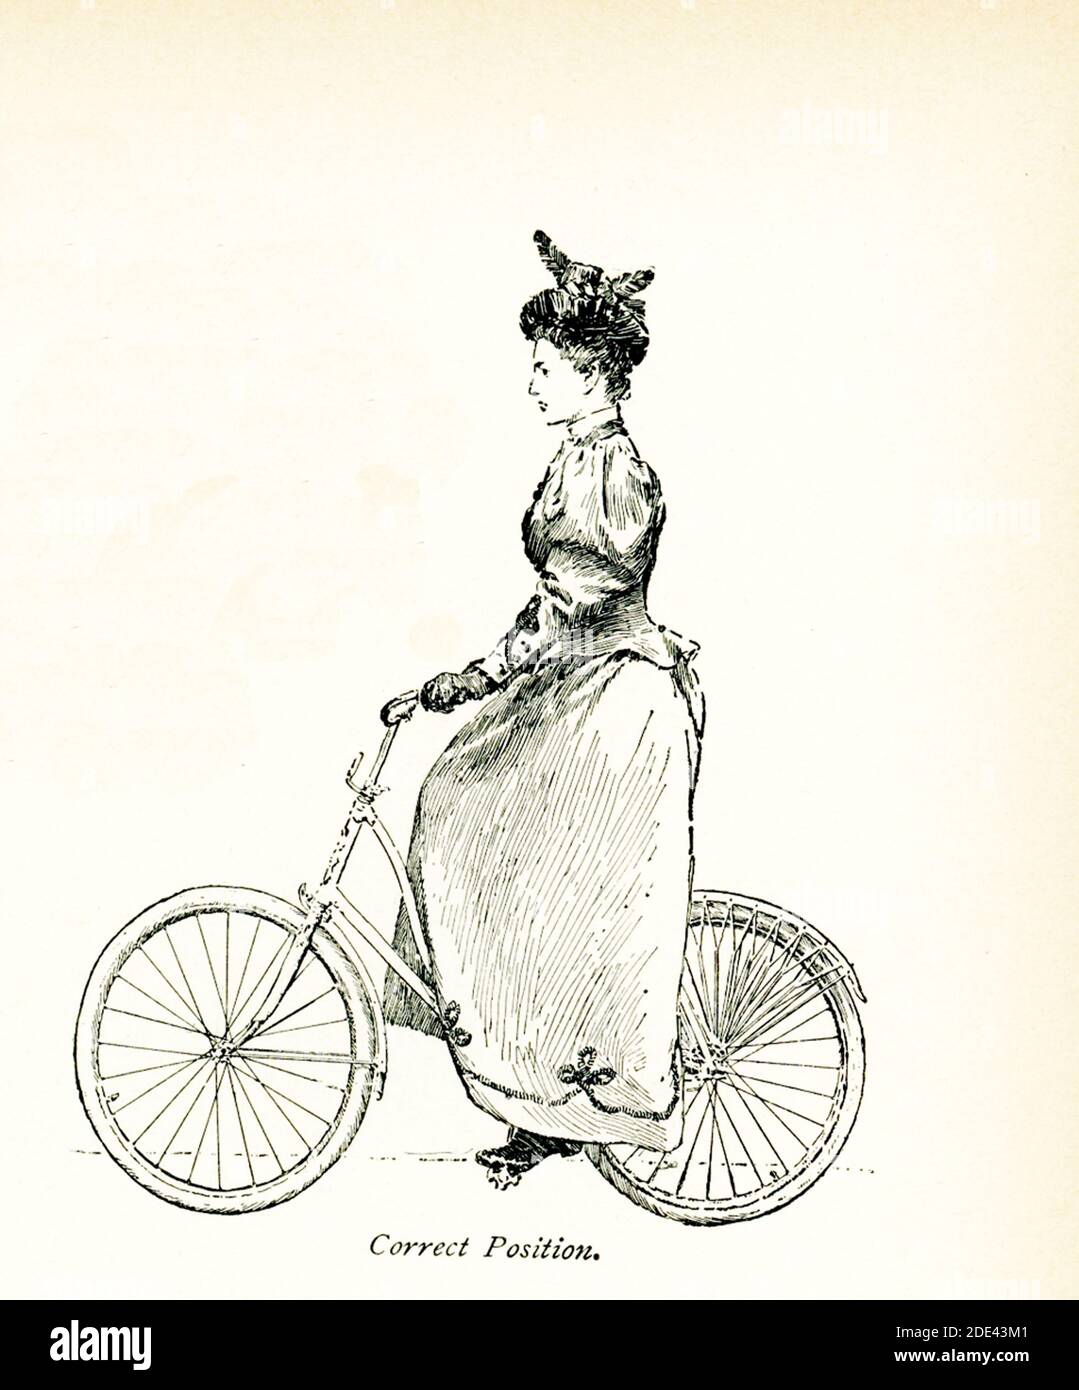 La légende 1897 de cette illustration est la suivante : la roue d'aujourd'hui – Femme sur vélo – position correcte Banque D'Images